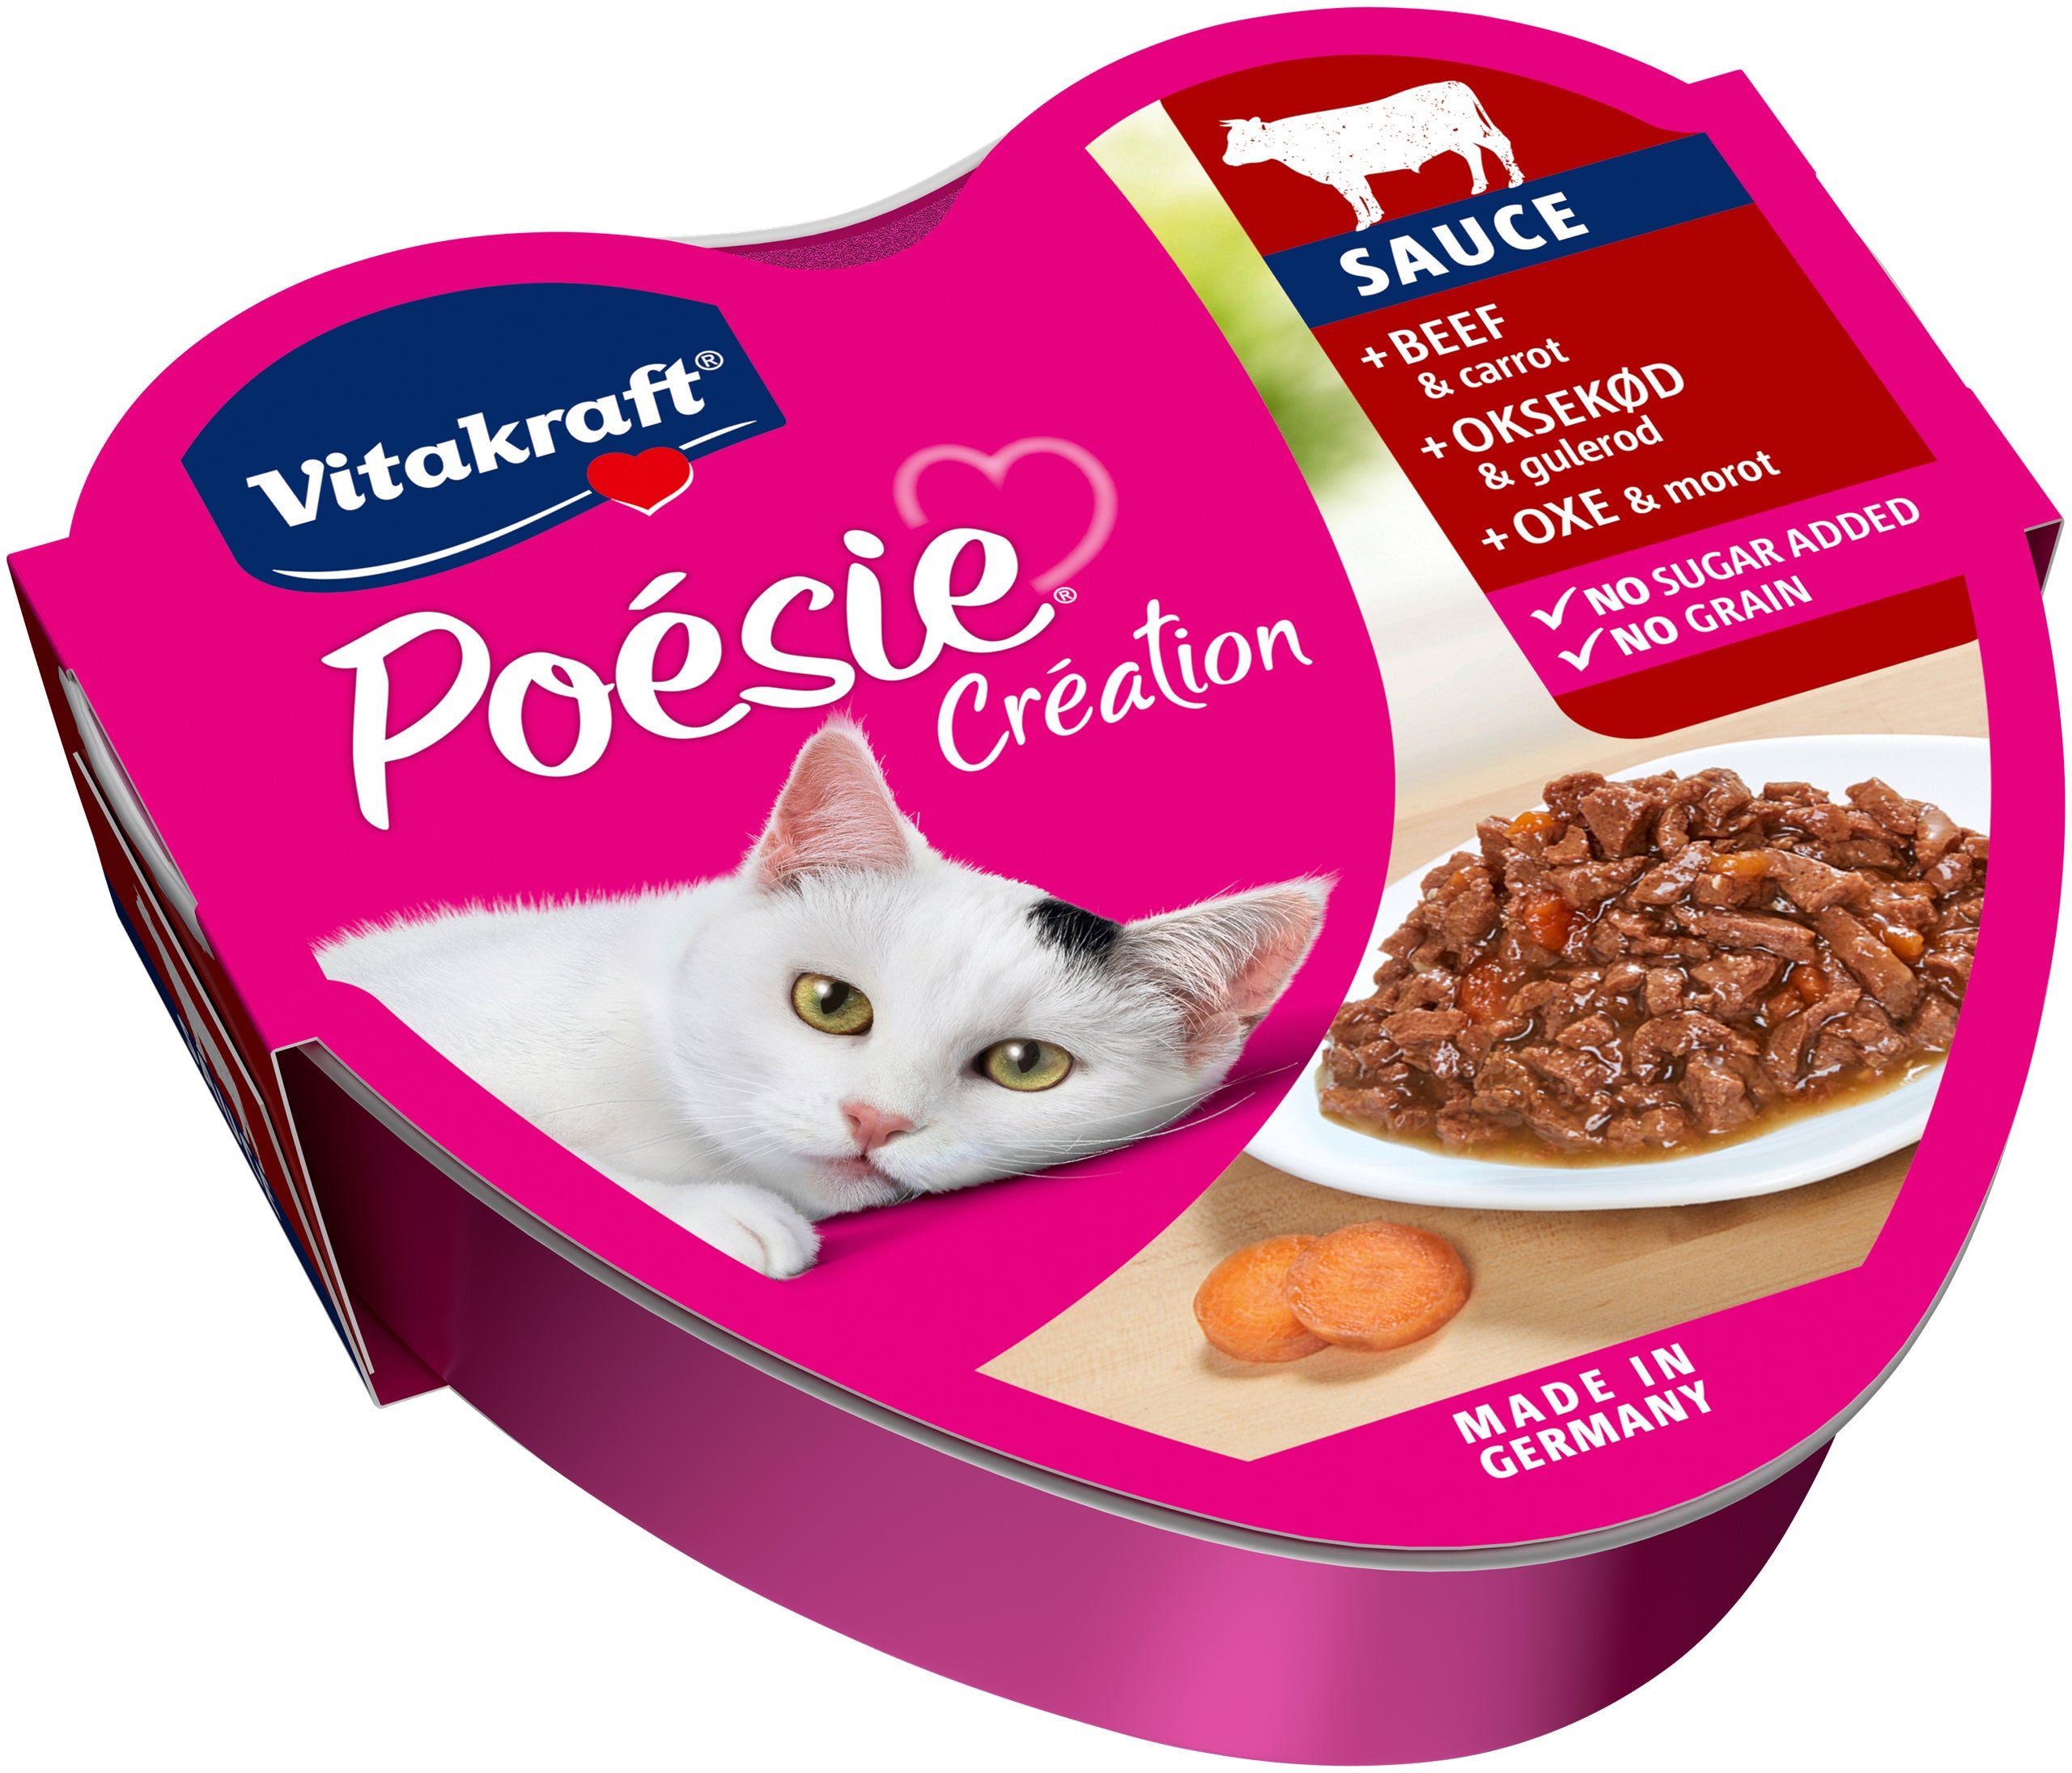 Billede af Vitakraft Poésie® Création med oksekød og gulerødder i sauce vådfoder til kat hos Petpower.dk